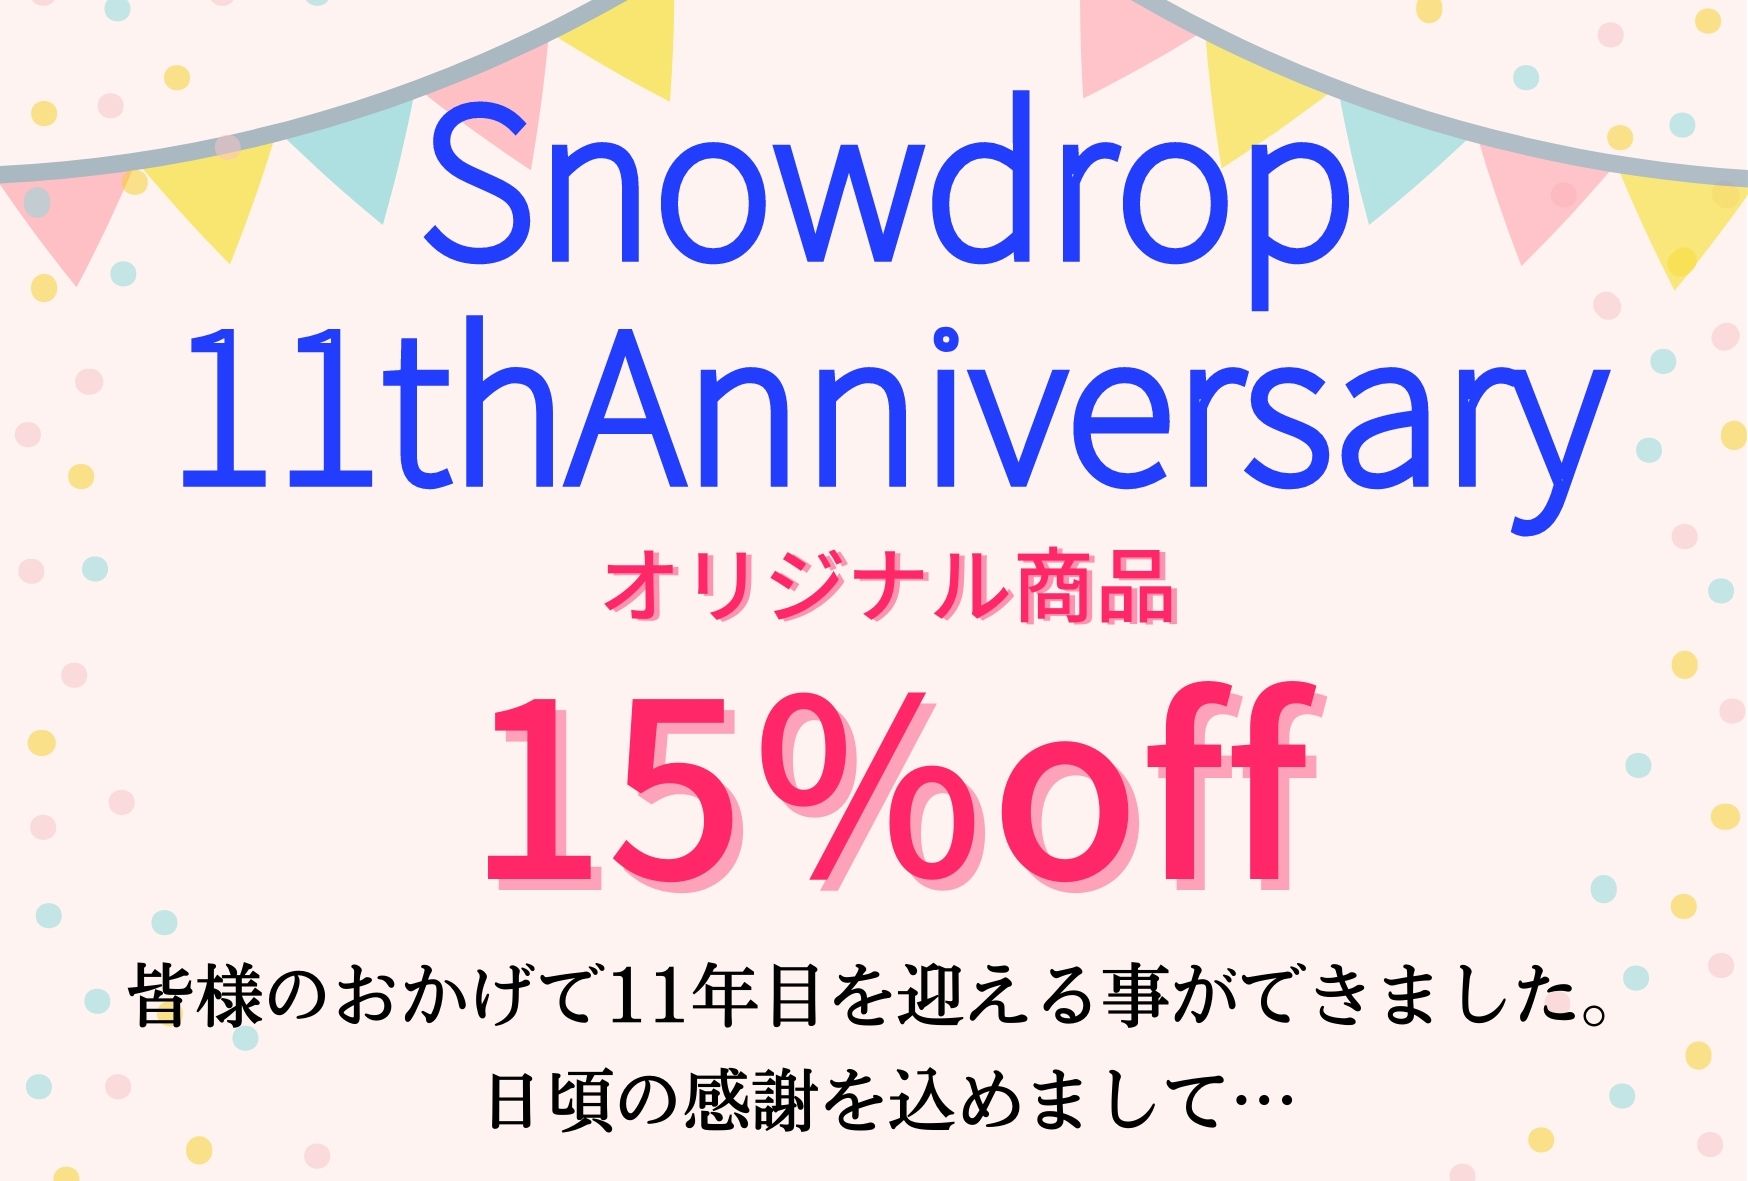 Snowdrop4月のキャンペーンのお知らせ☆